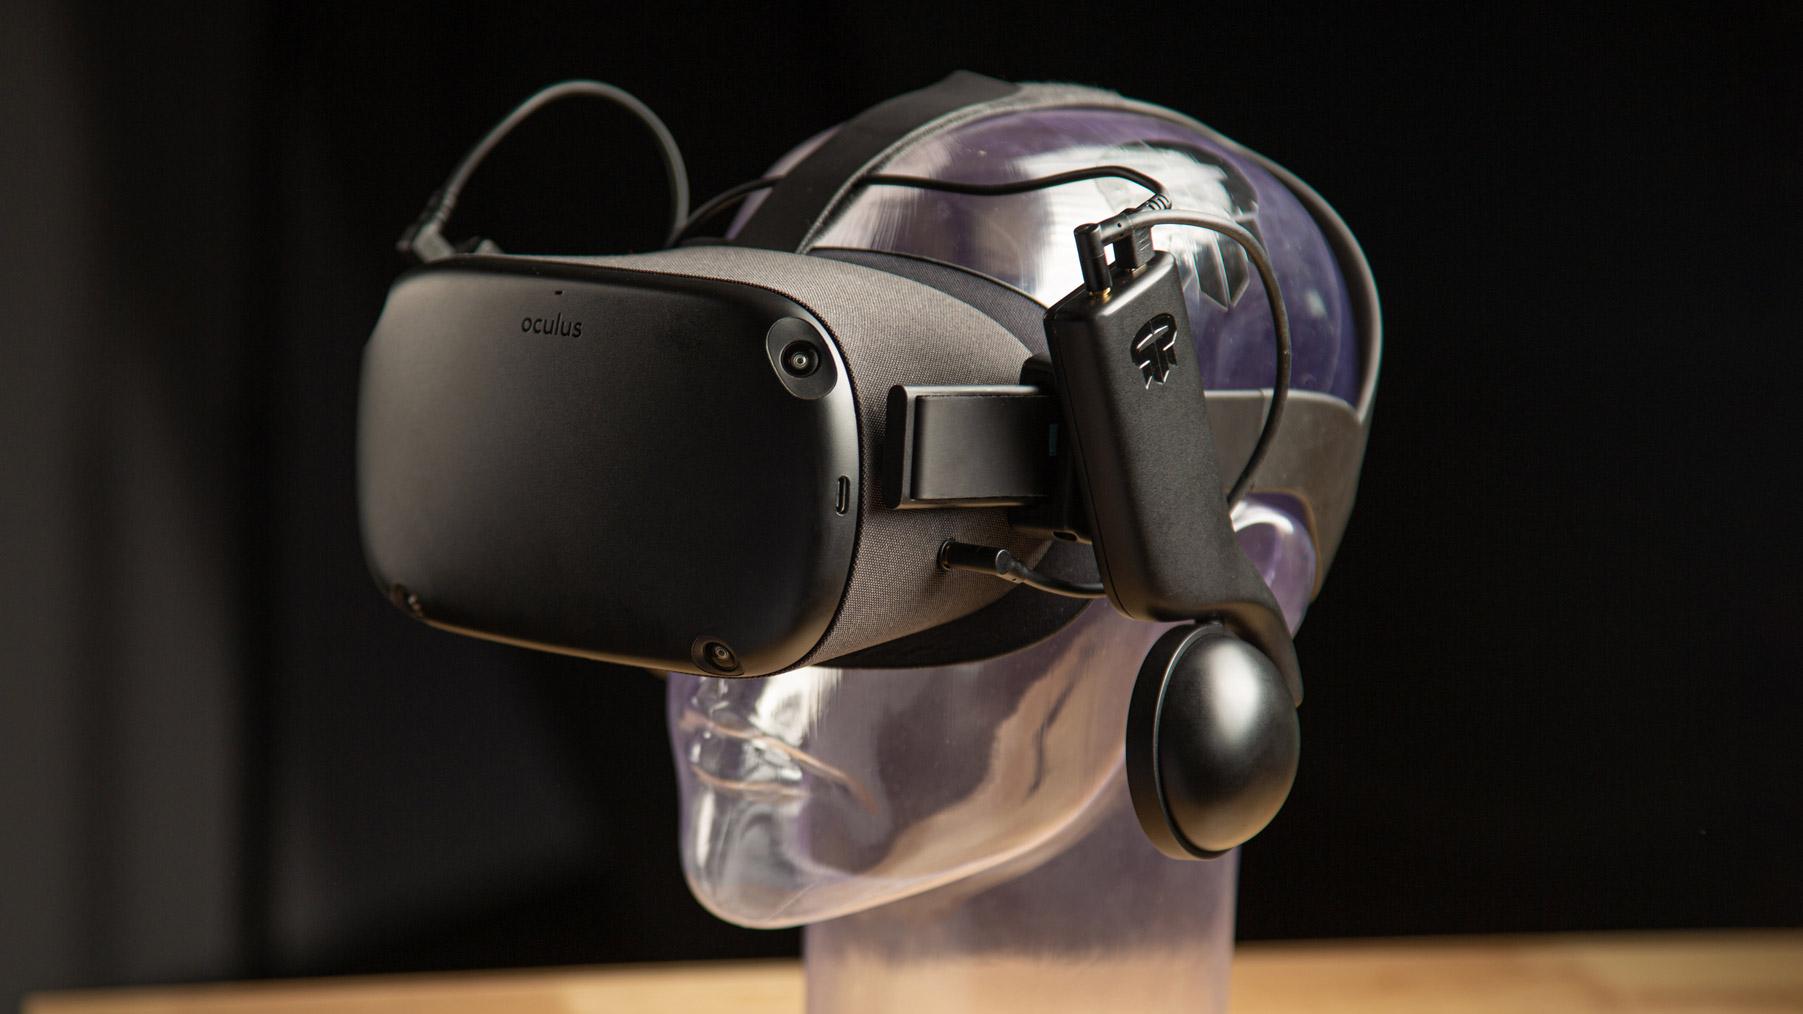 MYJK Stereo VR Headphone/Soundkit Custom Made for Oculus Rift S VR Headset-1 Pair 2021 New Version